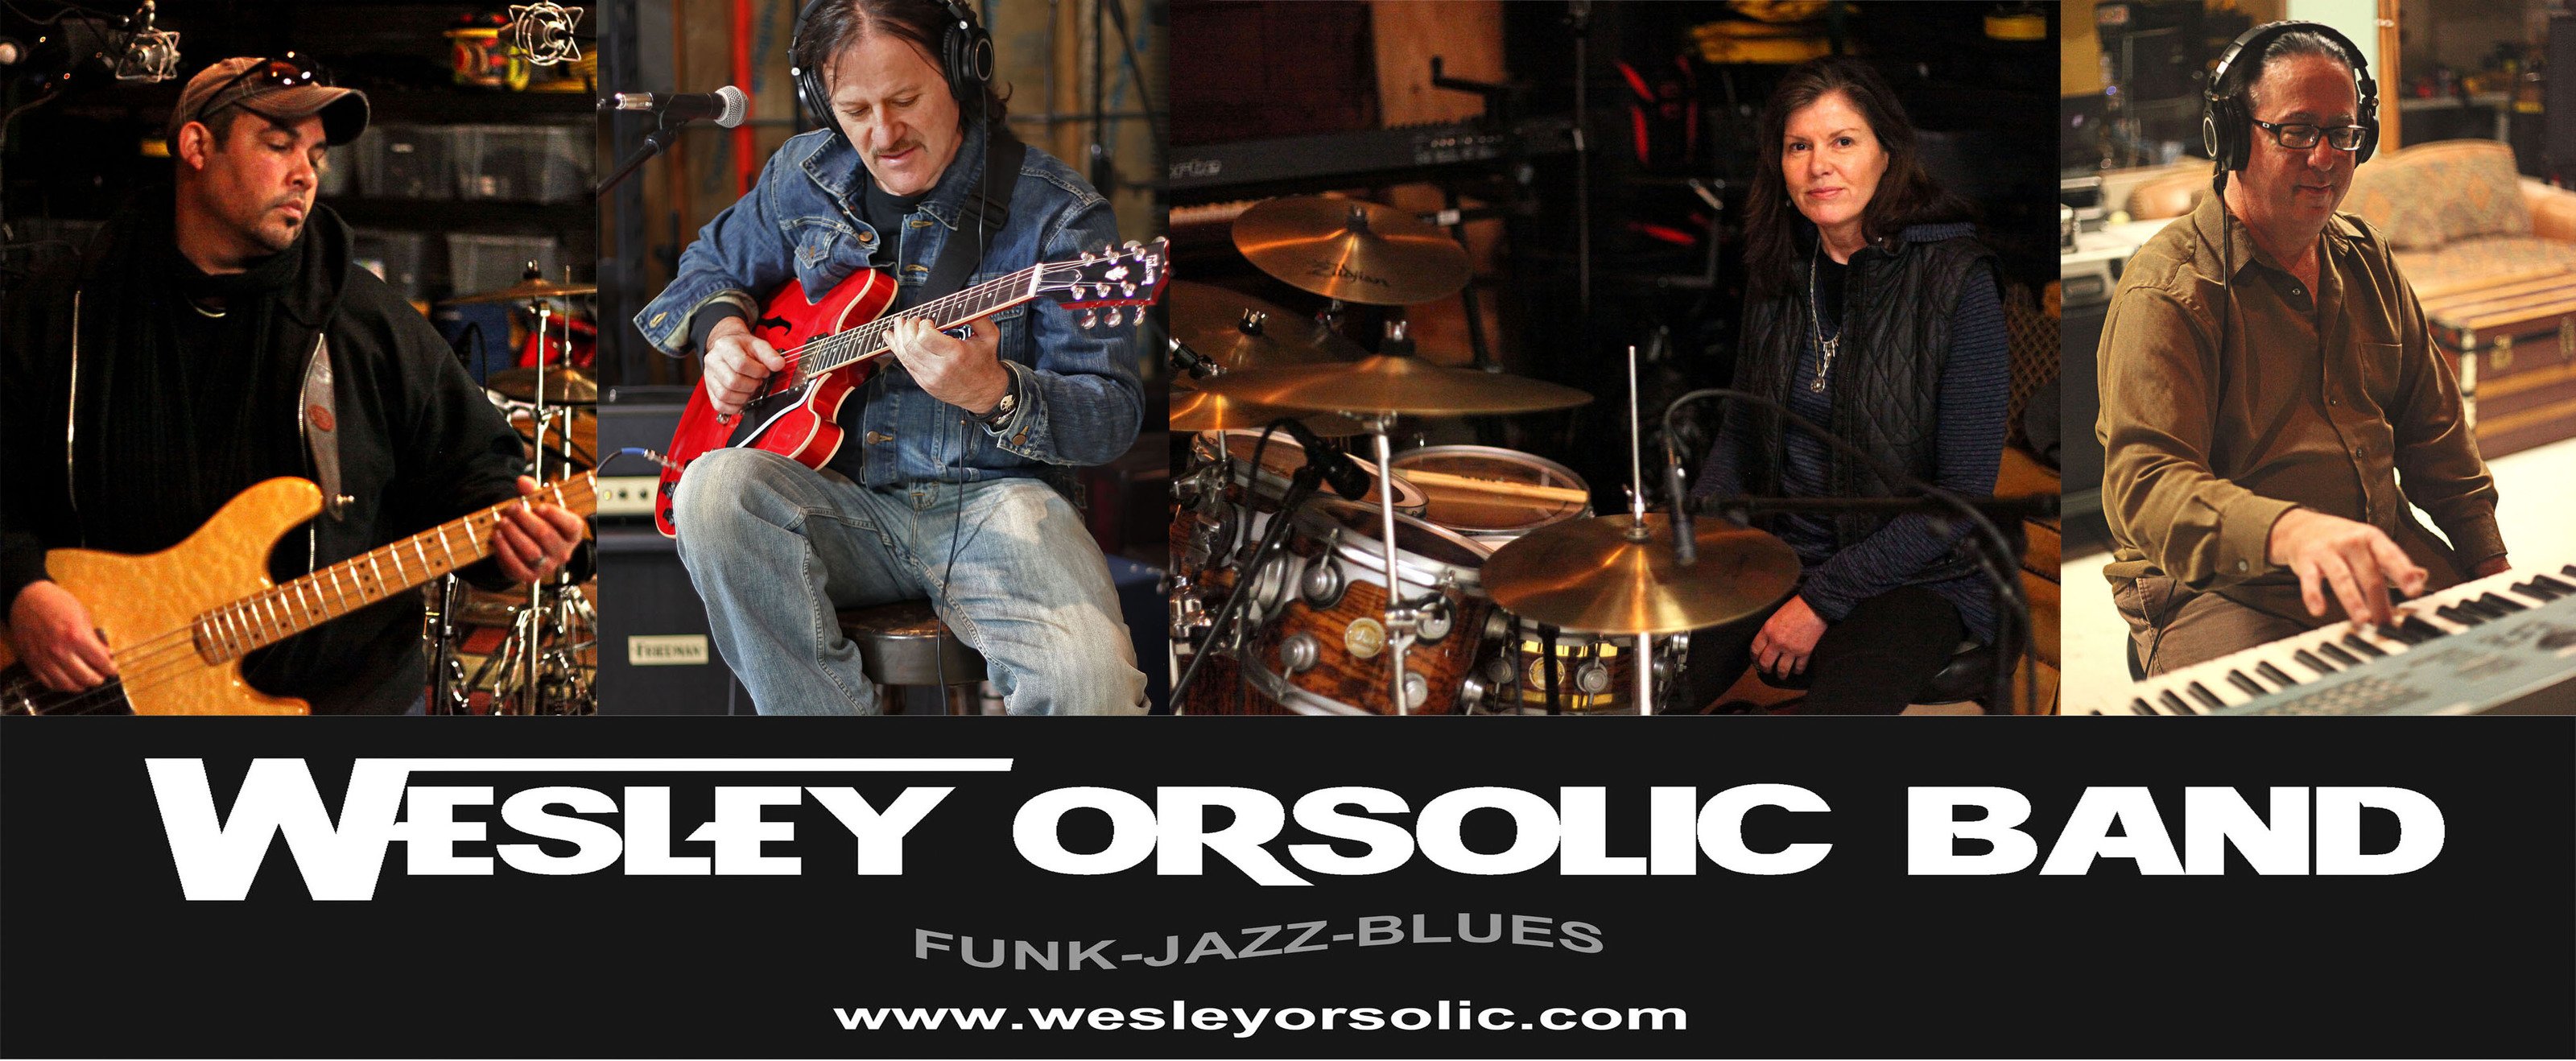 Wesley_Orsolic_Band